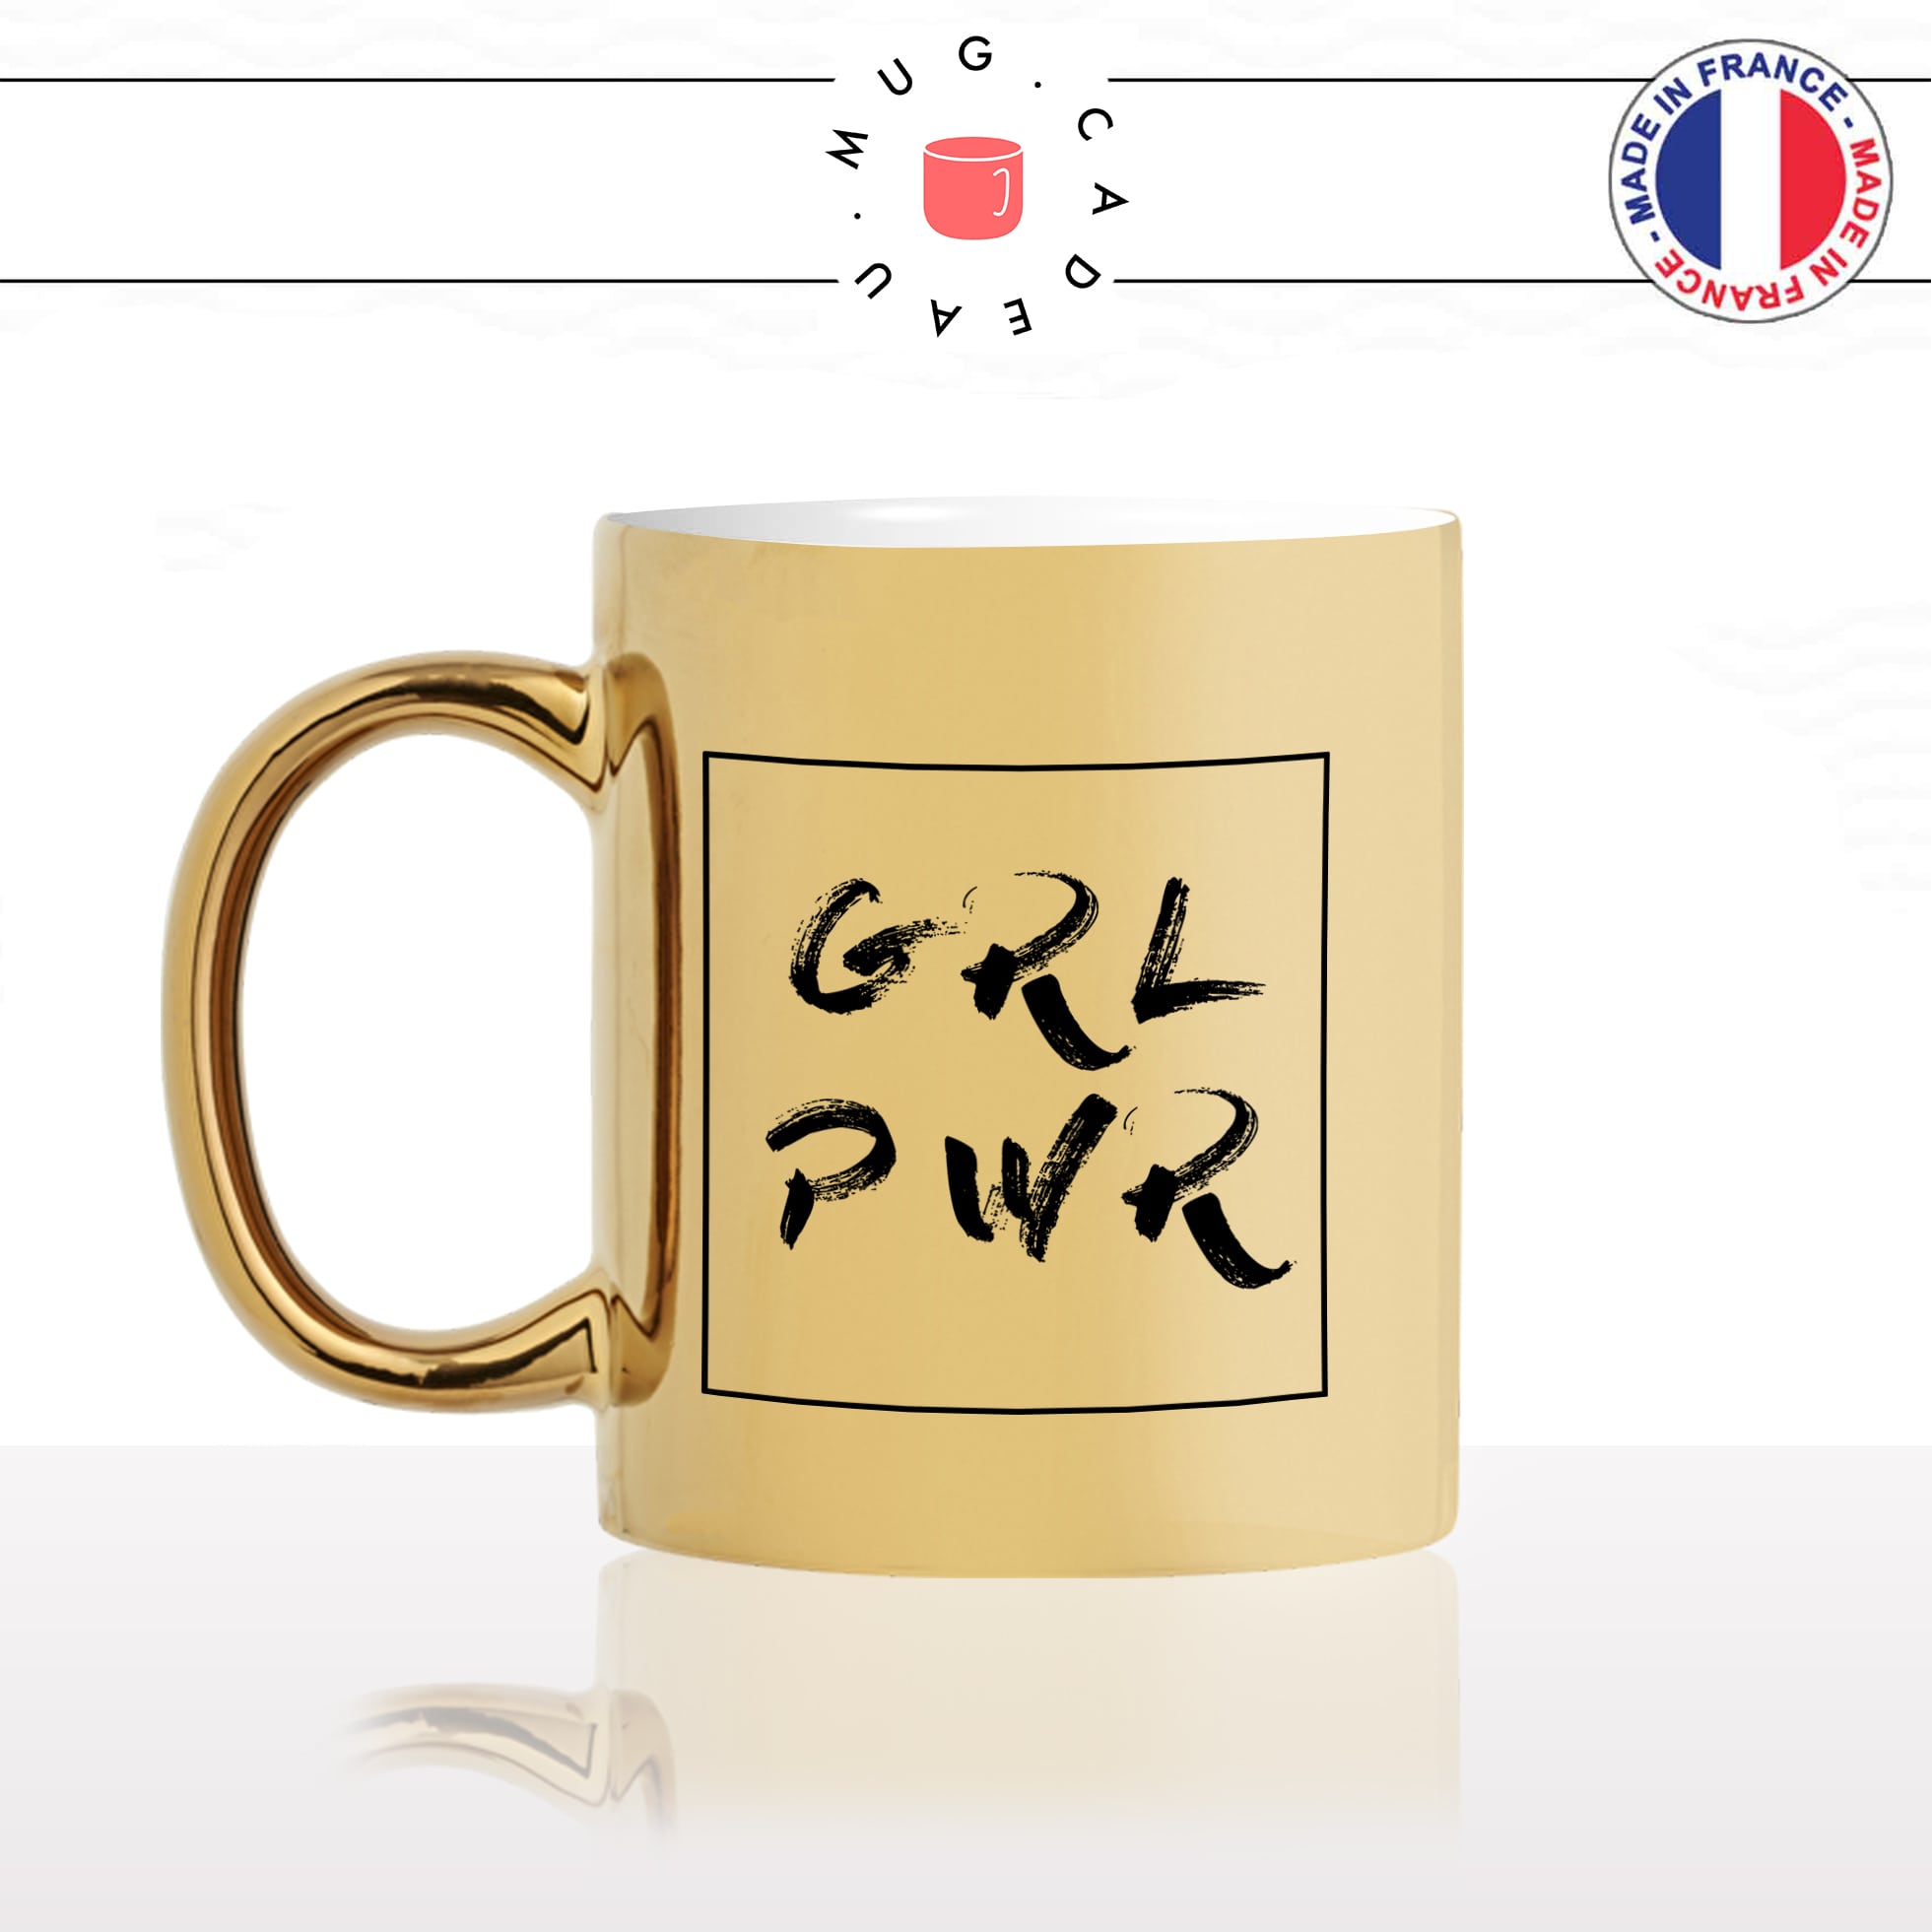 mug-tasse-doré-or-gold-girl-power-effet-pinceau-citation-phrase-dicton-humour-fun-idée-cadeau-personnalisé-café-thé-min